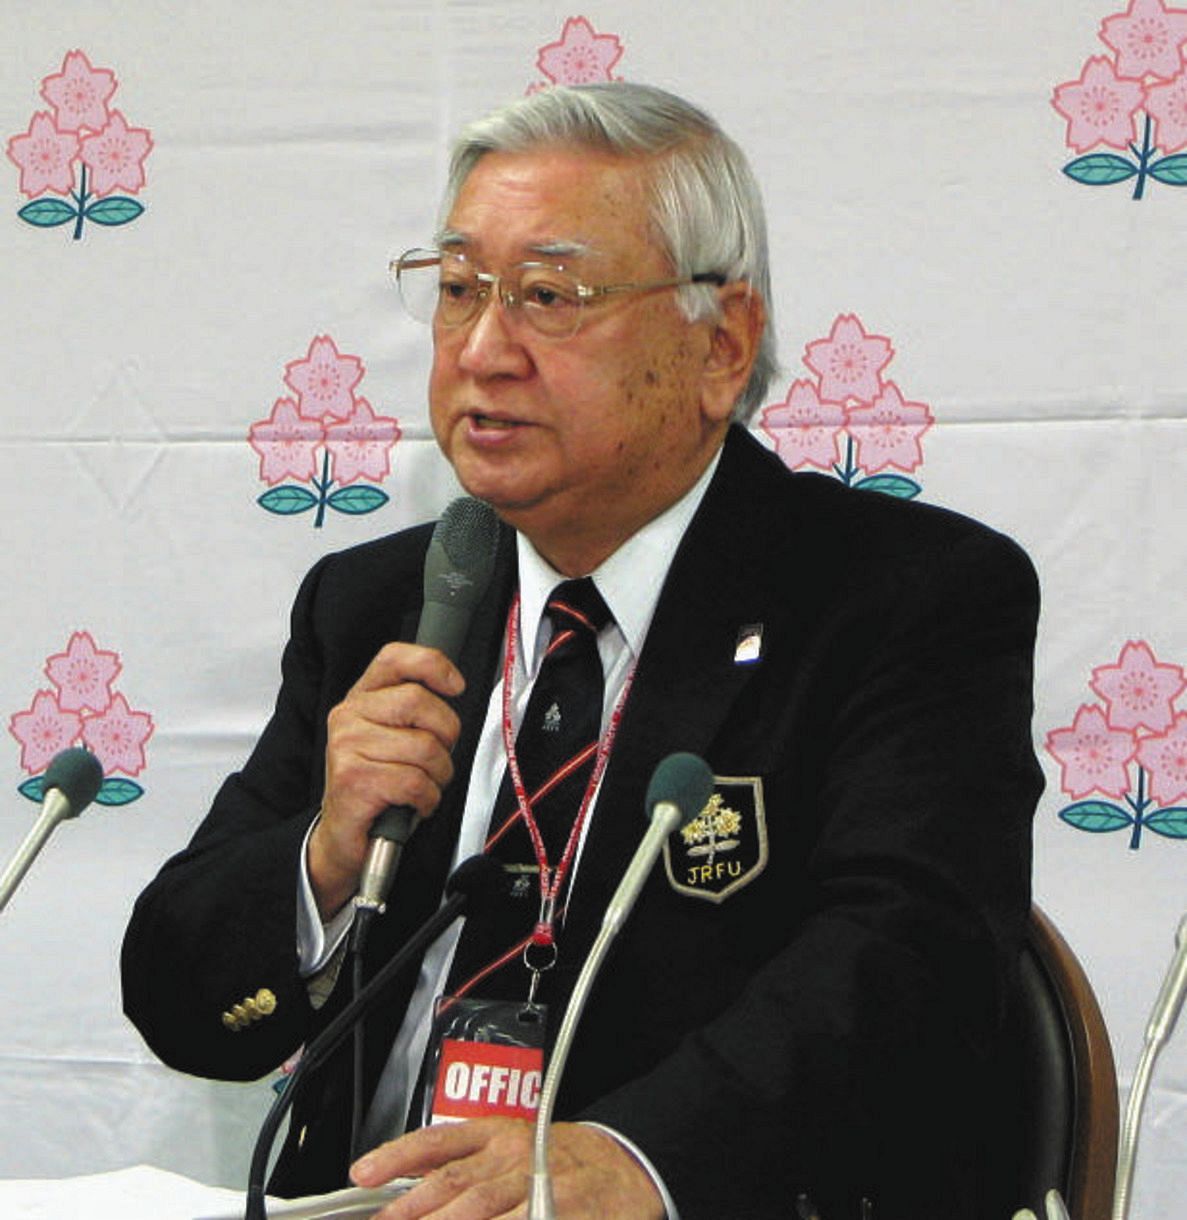 2005年11月、W杯2011年大会招致に関する会見での日比野弘さん